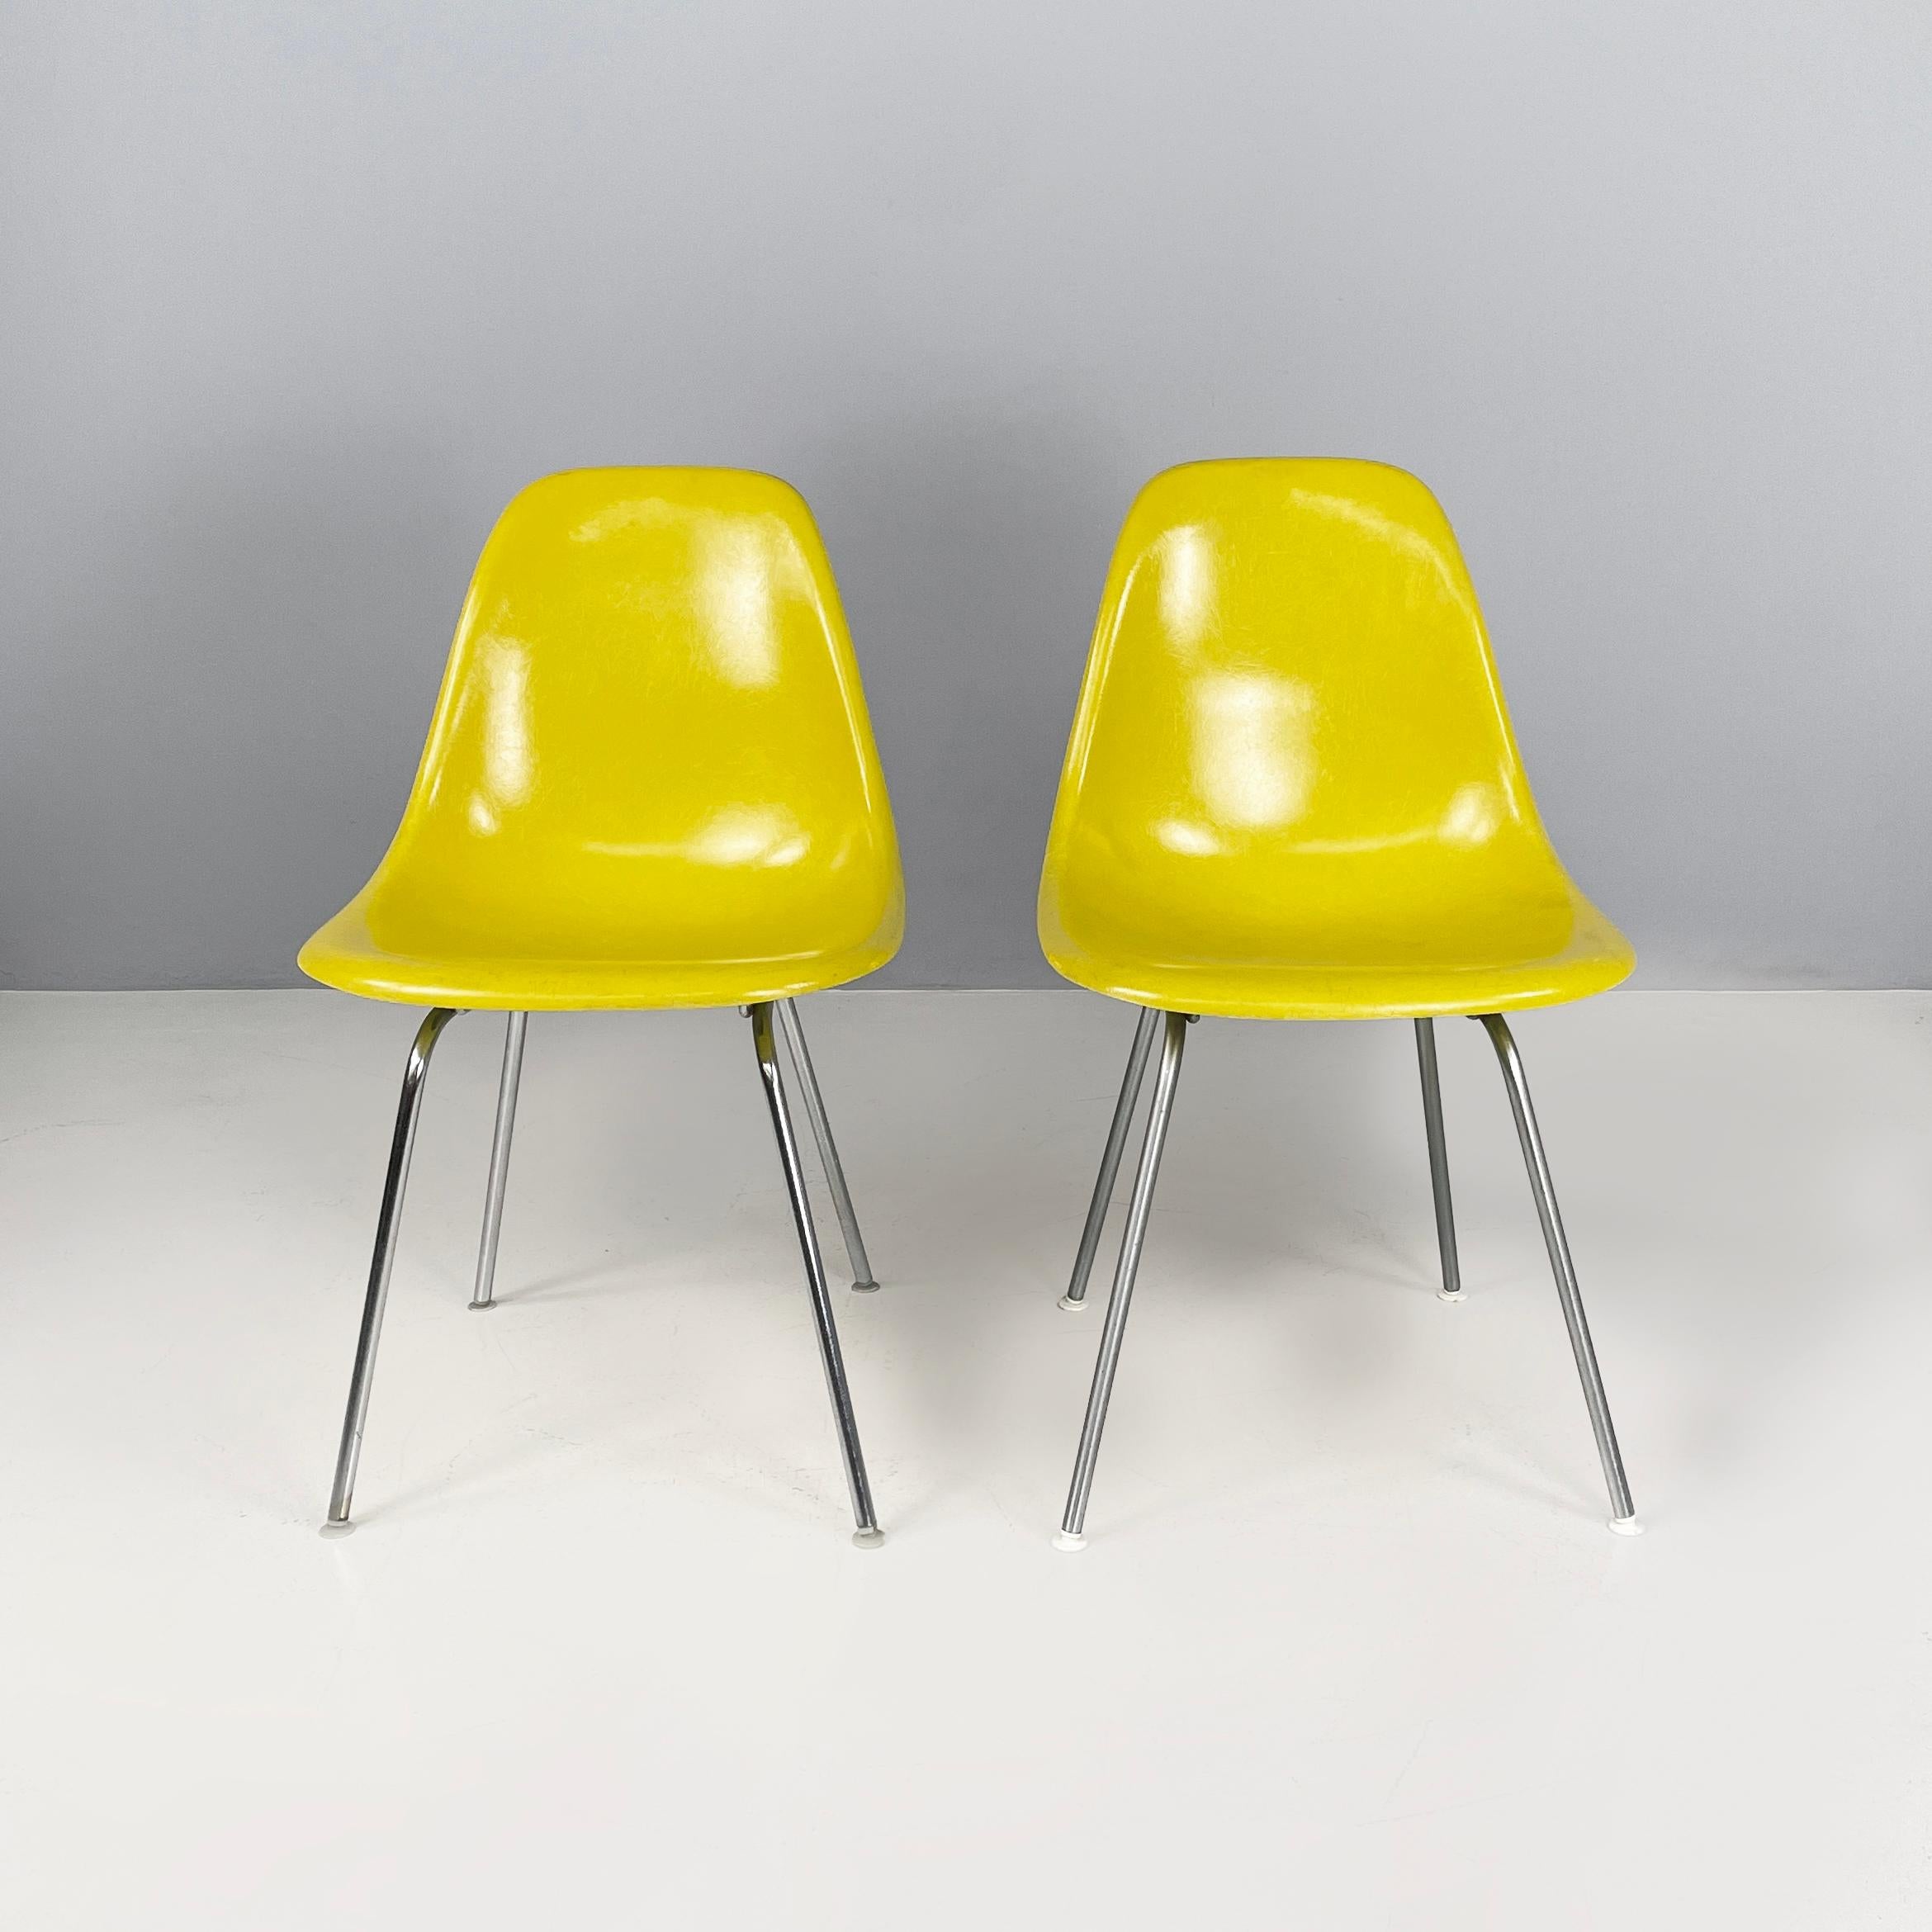 Chaises Shell jaunes modernes américaines par Charles et Ray Eames pour Herman Miller, 1970
Paire de chaises appartenant à la série Shell Chairs avec assise et dossier monocoque incurvé en fibre de verre jaune. Les pieds sont en métal. Pieds ronds